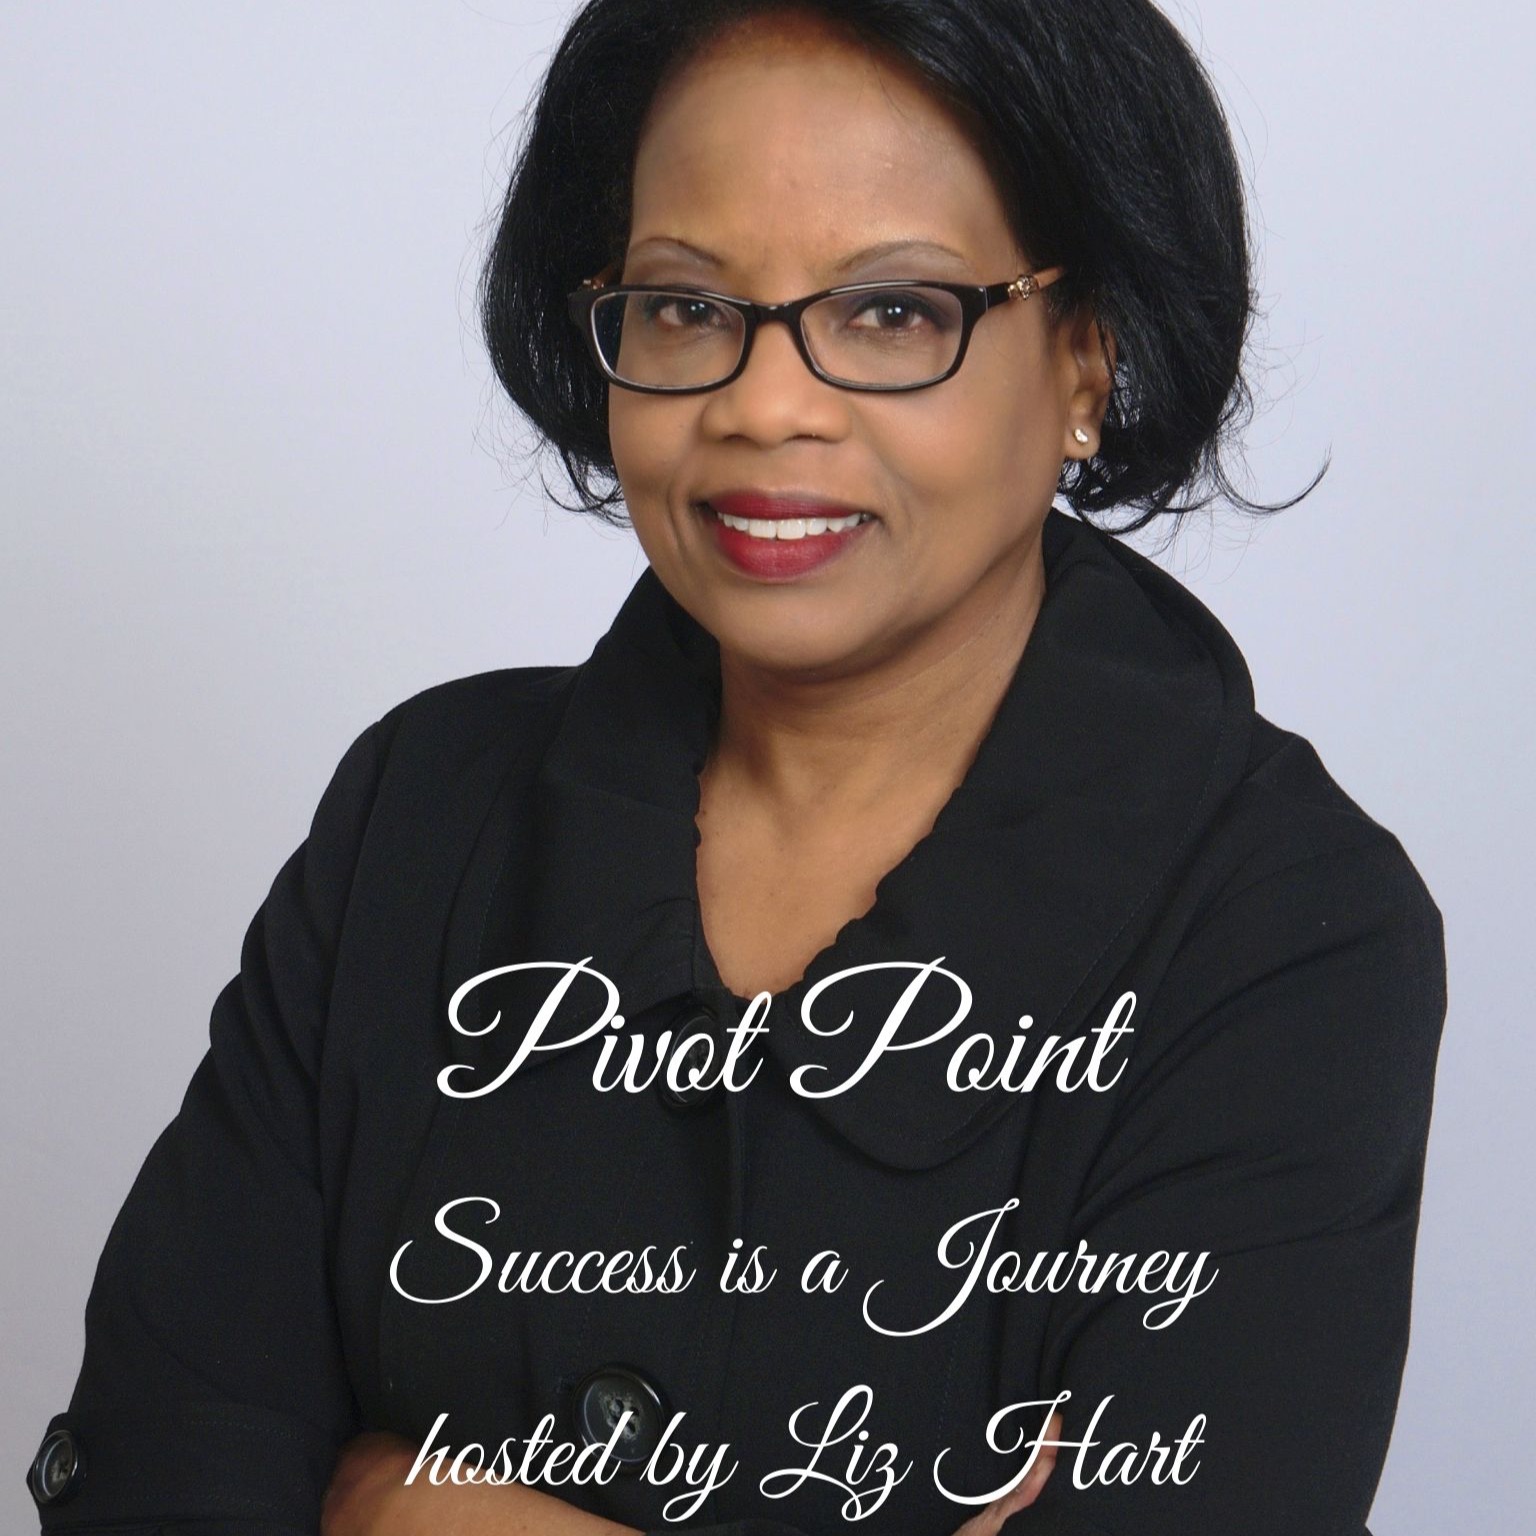 Pivot Point - Success is a Journey!